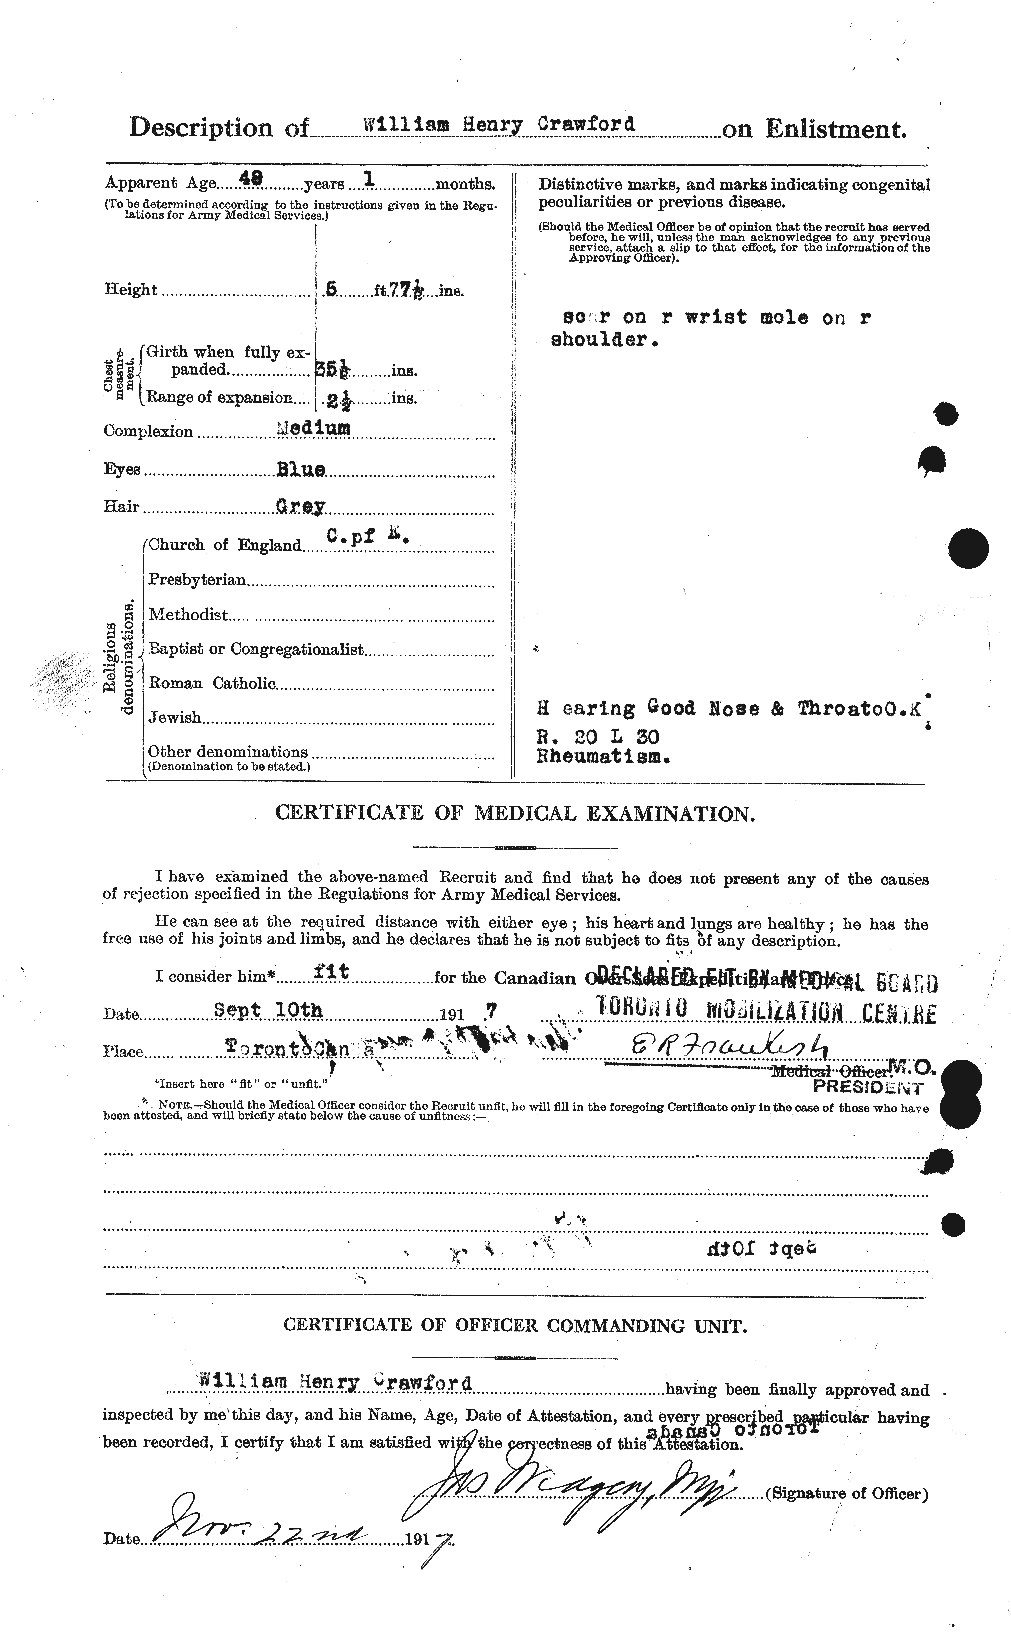 Dossiers du Personnel de la Première Guerre mondiale - CEC 061139b